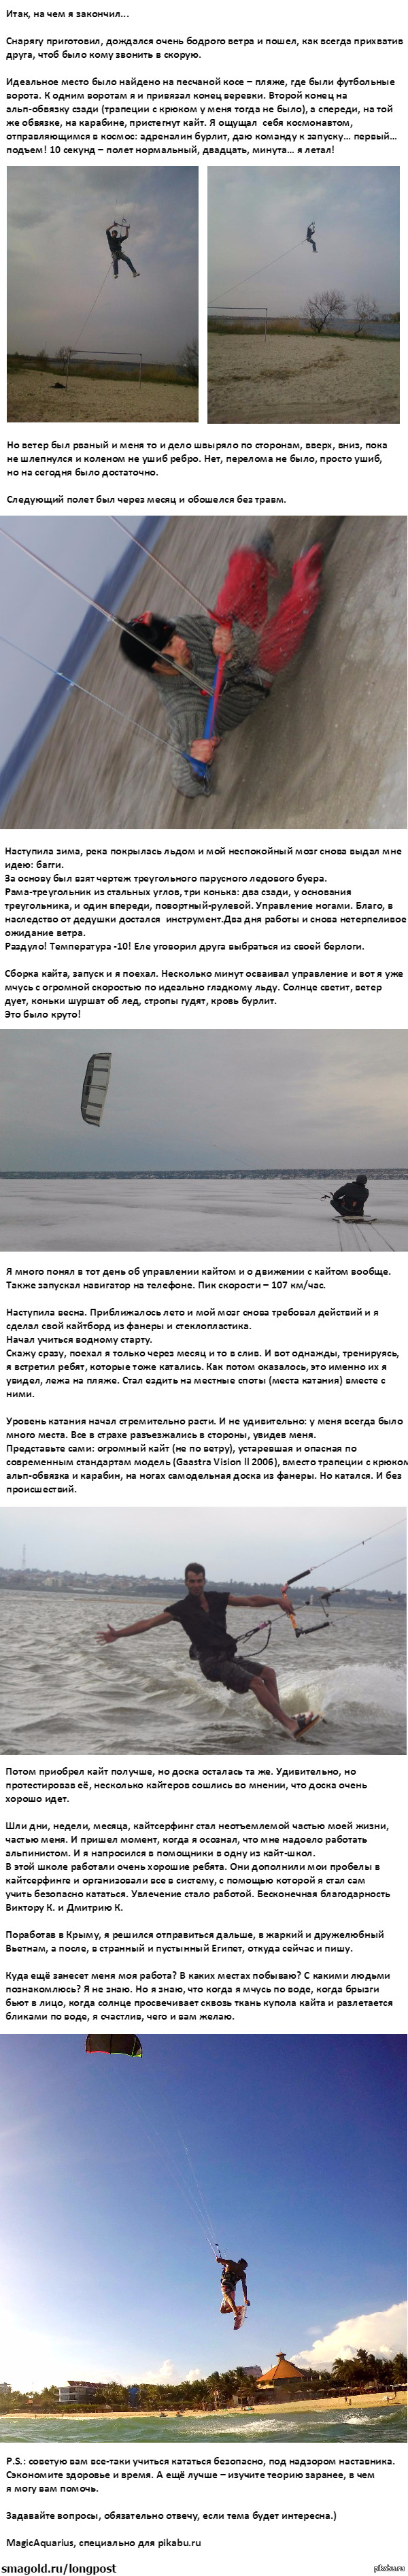          2 ,      <a href="http://pikabu.ru/story/moe_znakomstvo_s_kaytserfingom_3215596">http://pikabu.ru/story/_3215596</a>